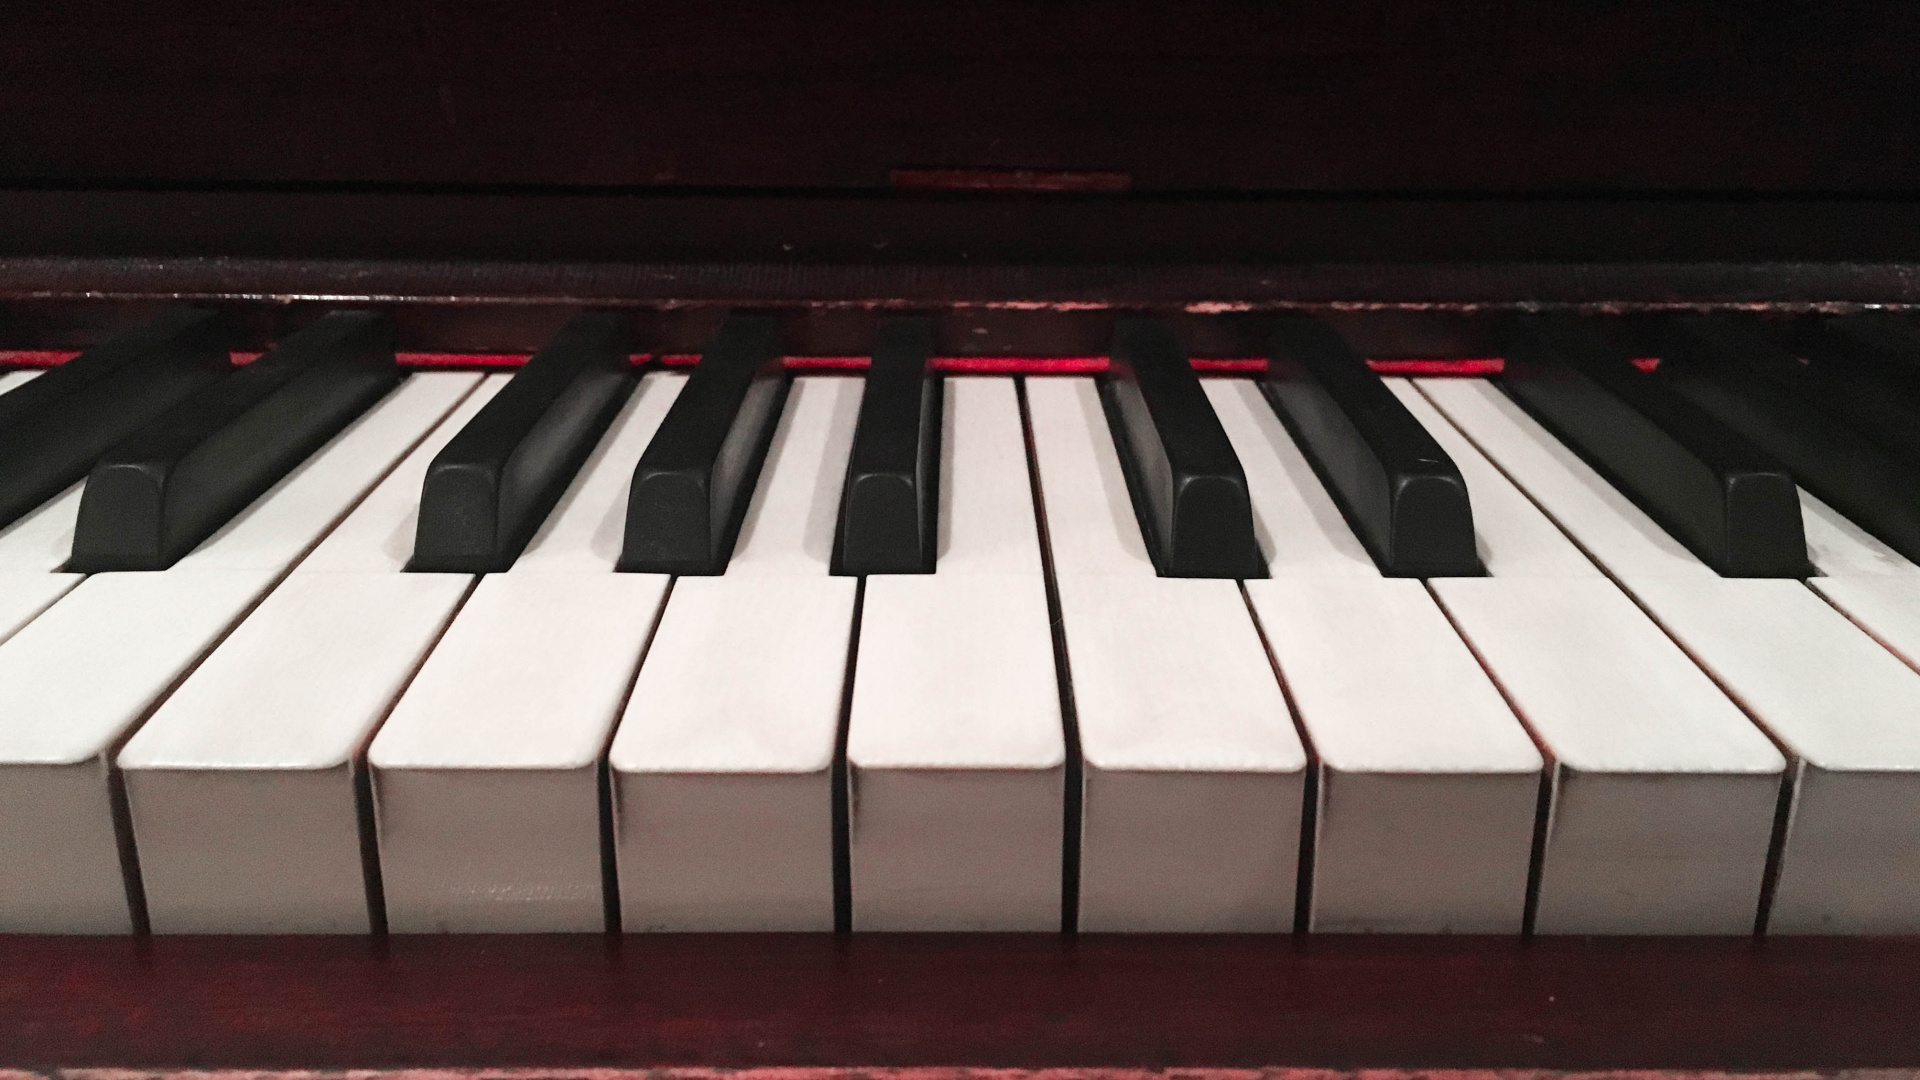 Klavier, Musikalische Tastatur, Tastatur, Schlüssel, Elektronisches Instrument. Wallpaper in 1920x1080 Resolution